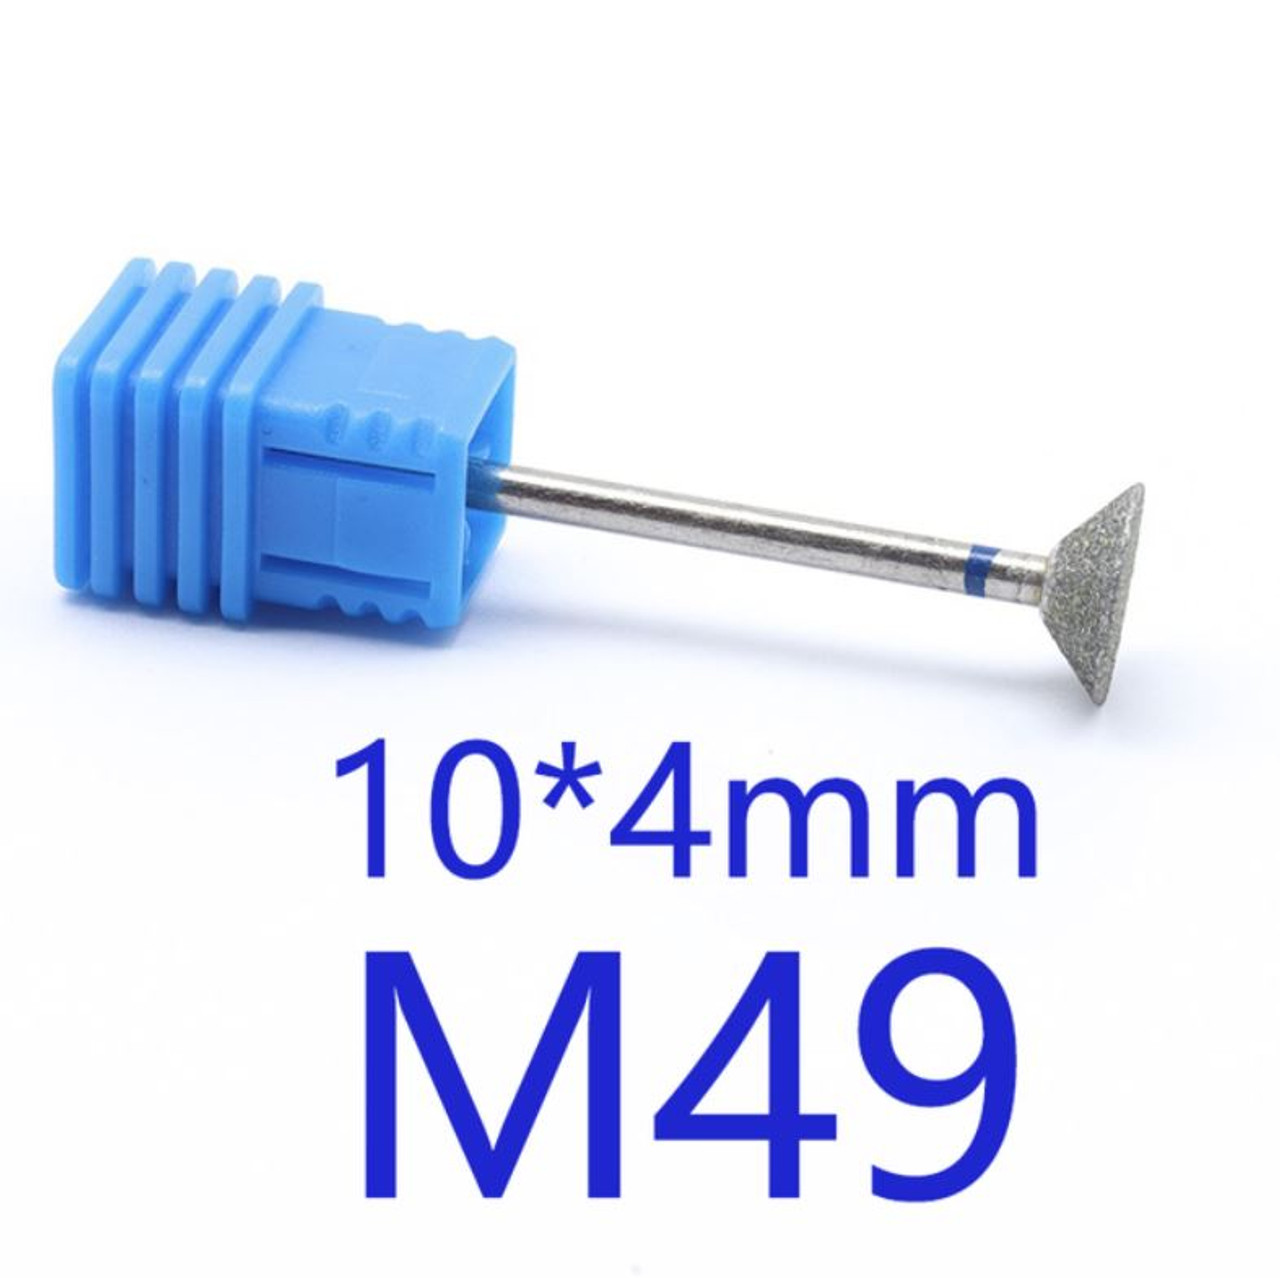 NDi beauty Diamond Drill Bit - 3/32 shank (MEDIUM) - M49